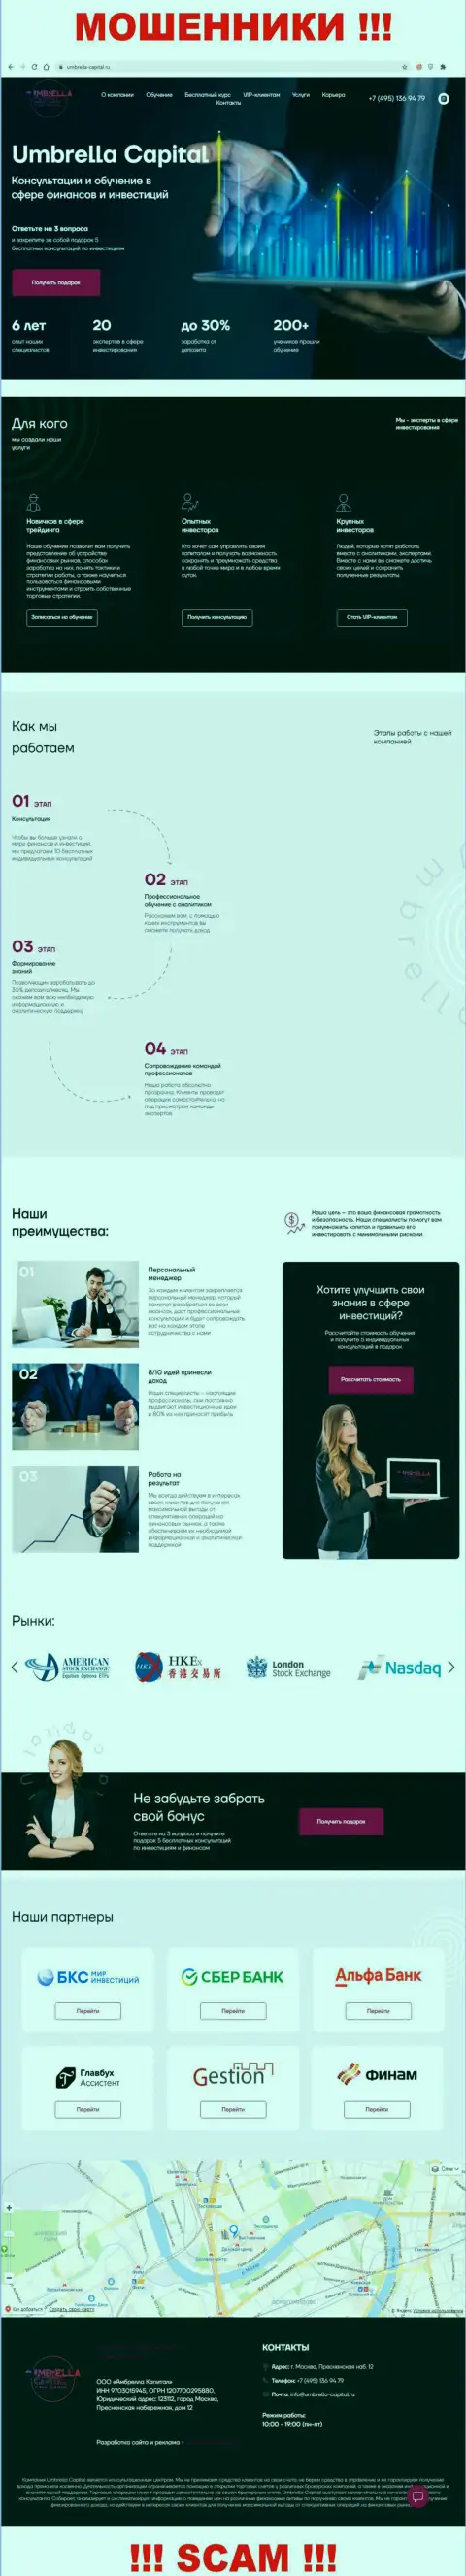 Внешний вид официального web-сайта жульнической конторы Umbrella-Capital Ru